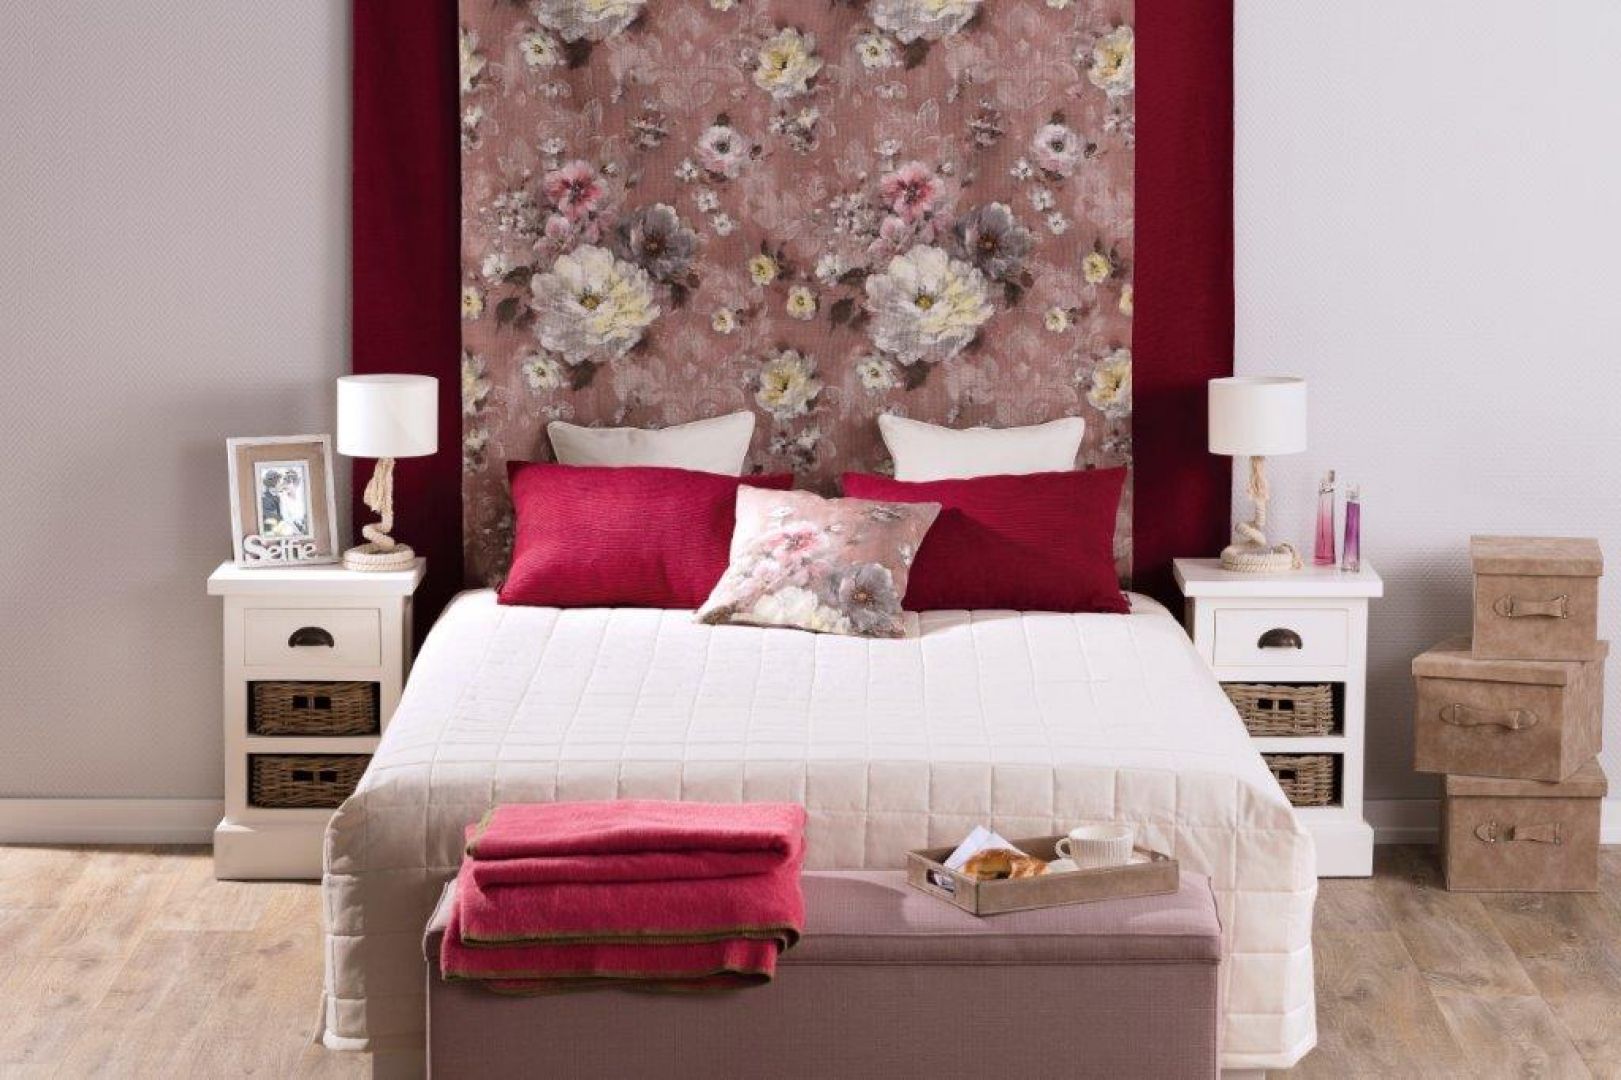 Kolekcja Monet&Granada wprowadzi sypialni kobiecy, romantyczny styl. Fot. Dekoria.pl